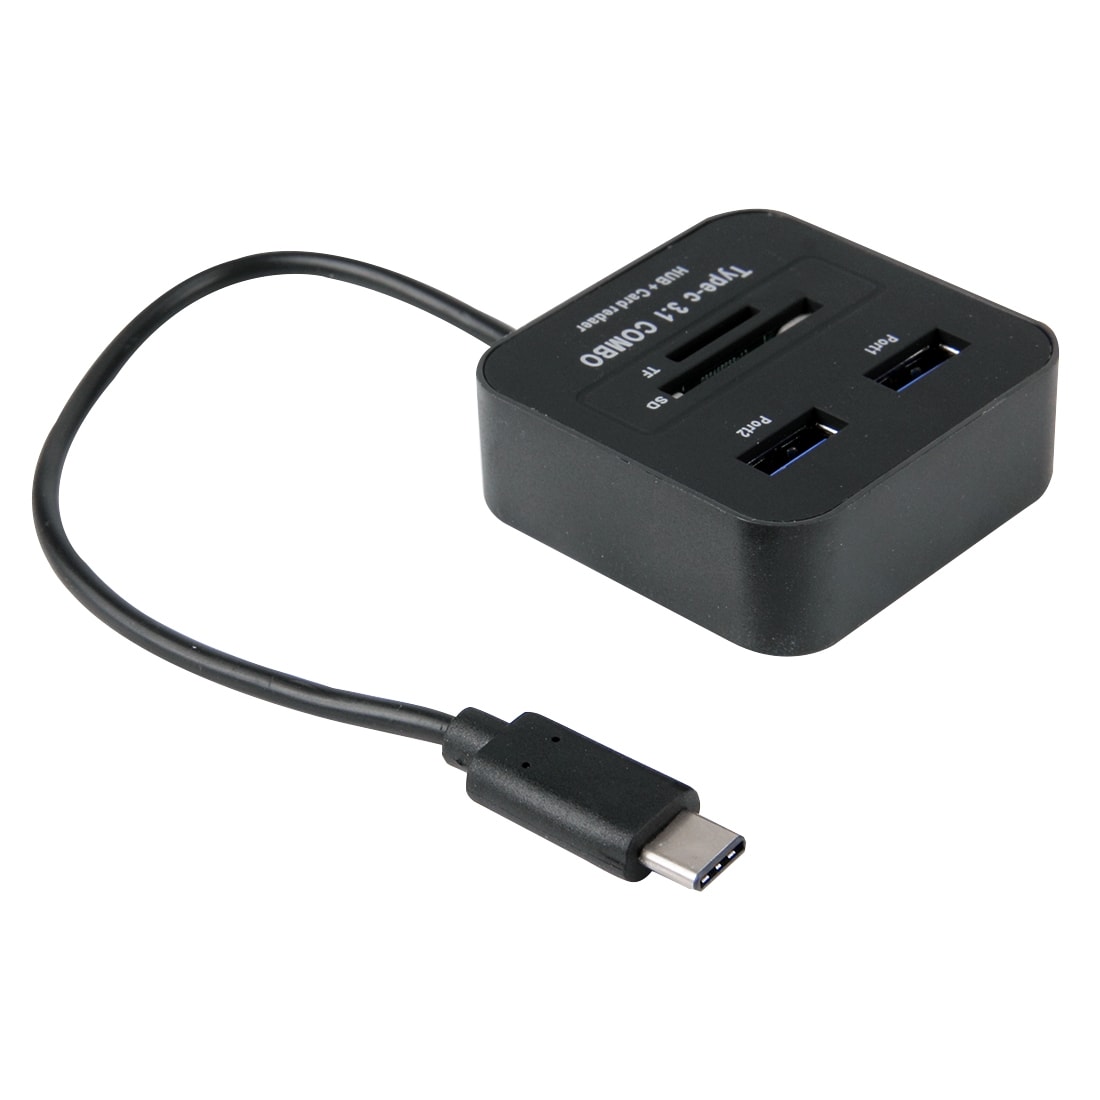 USB Kortleser / Hubb